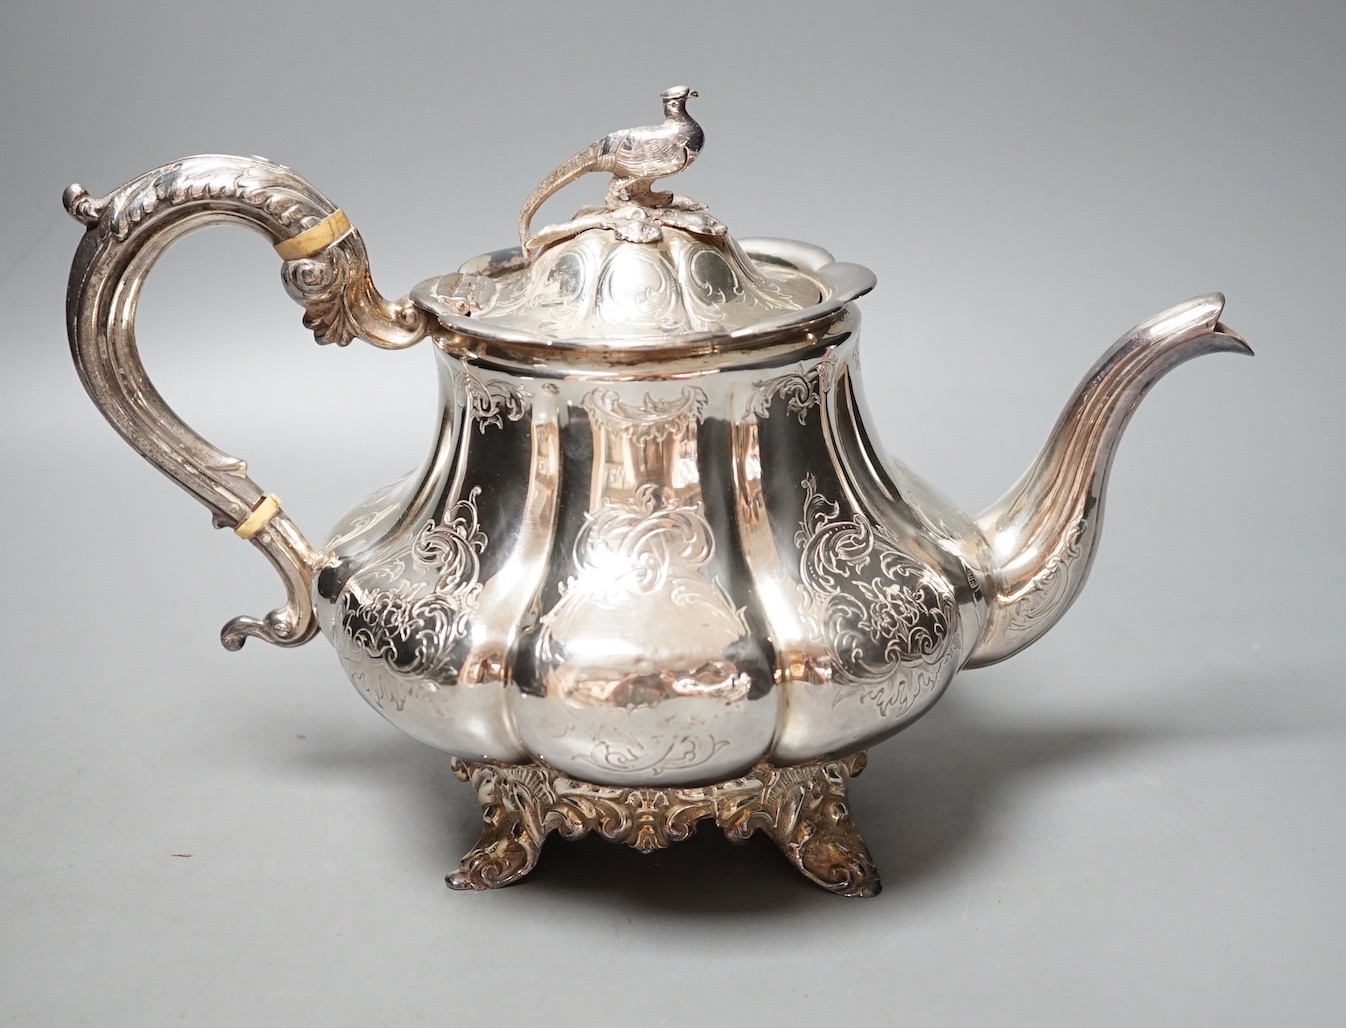 An early Victorian silver teapot, with bird finial, William Hewitt, London, 1844, gross 26.5oz.